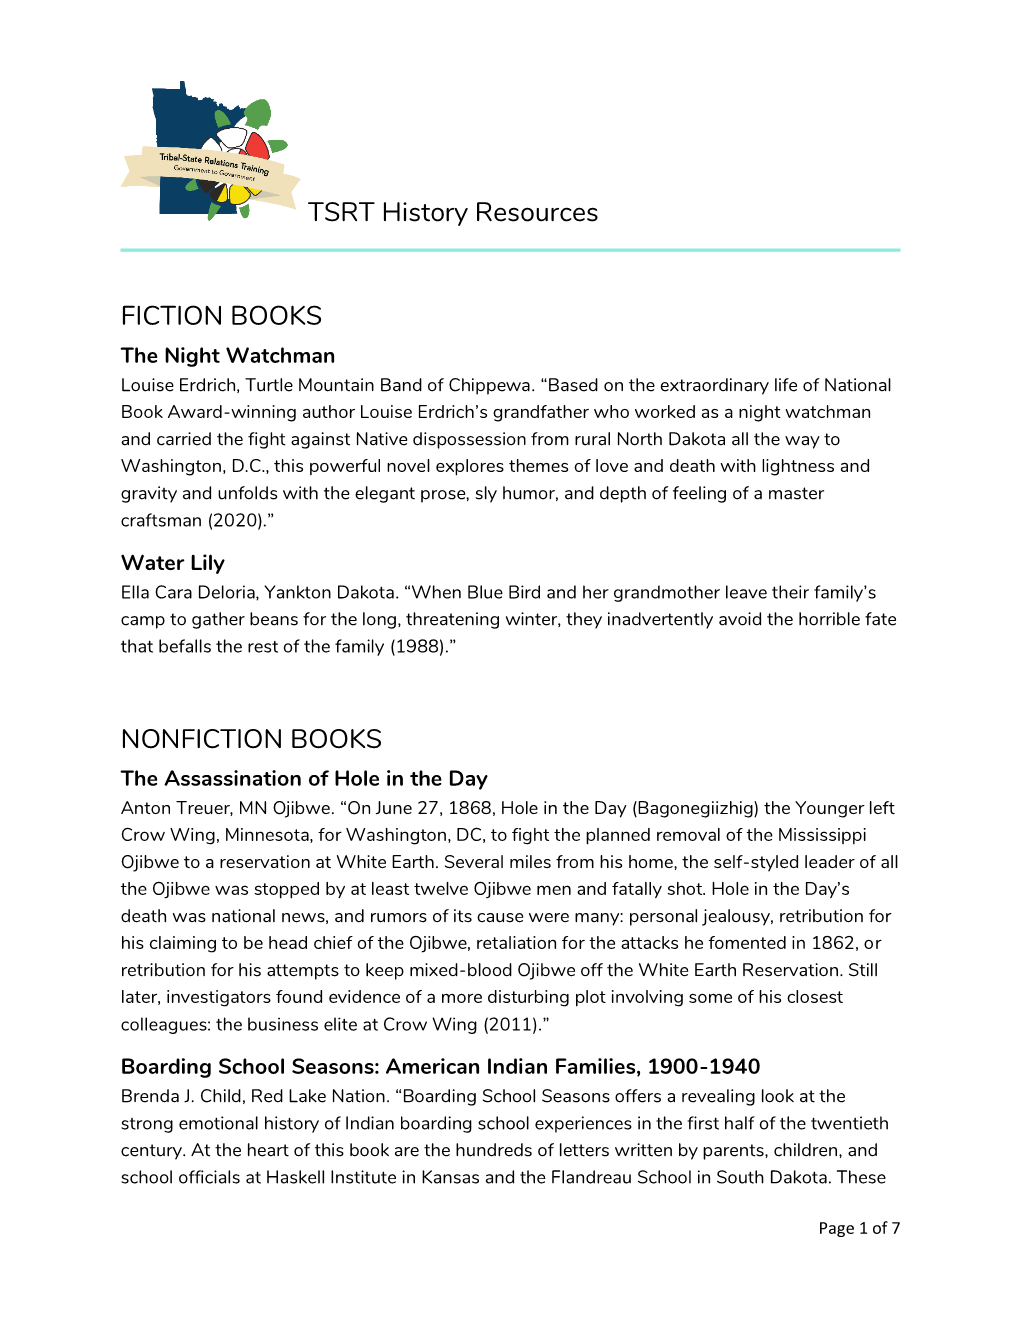 TSRT History Resources FICTION BOOKS NONFICTION BOOKS